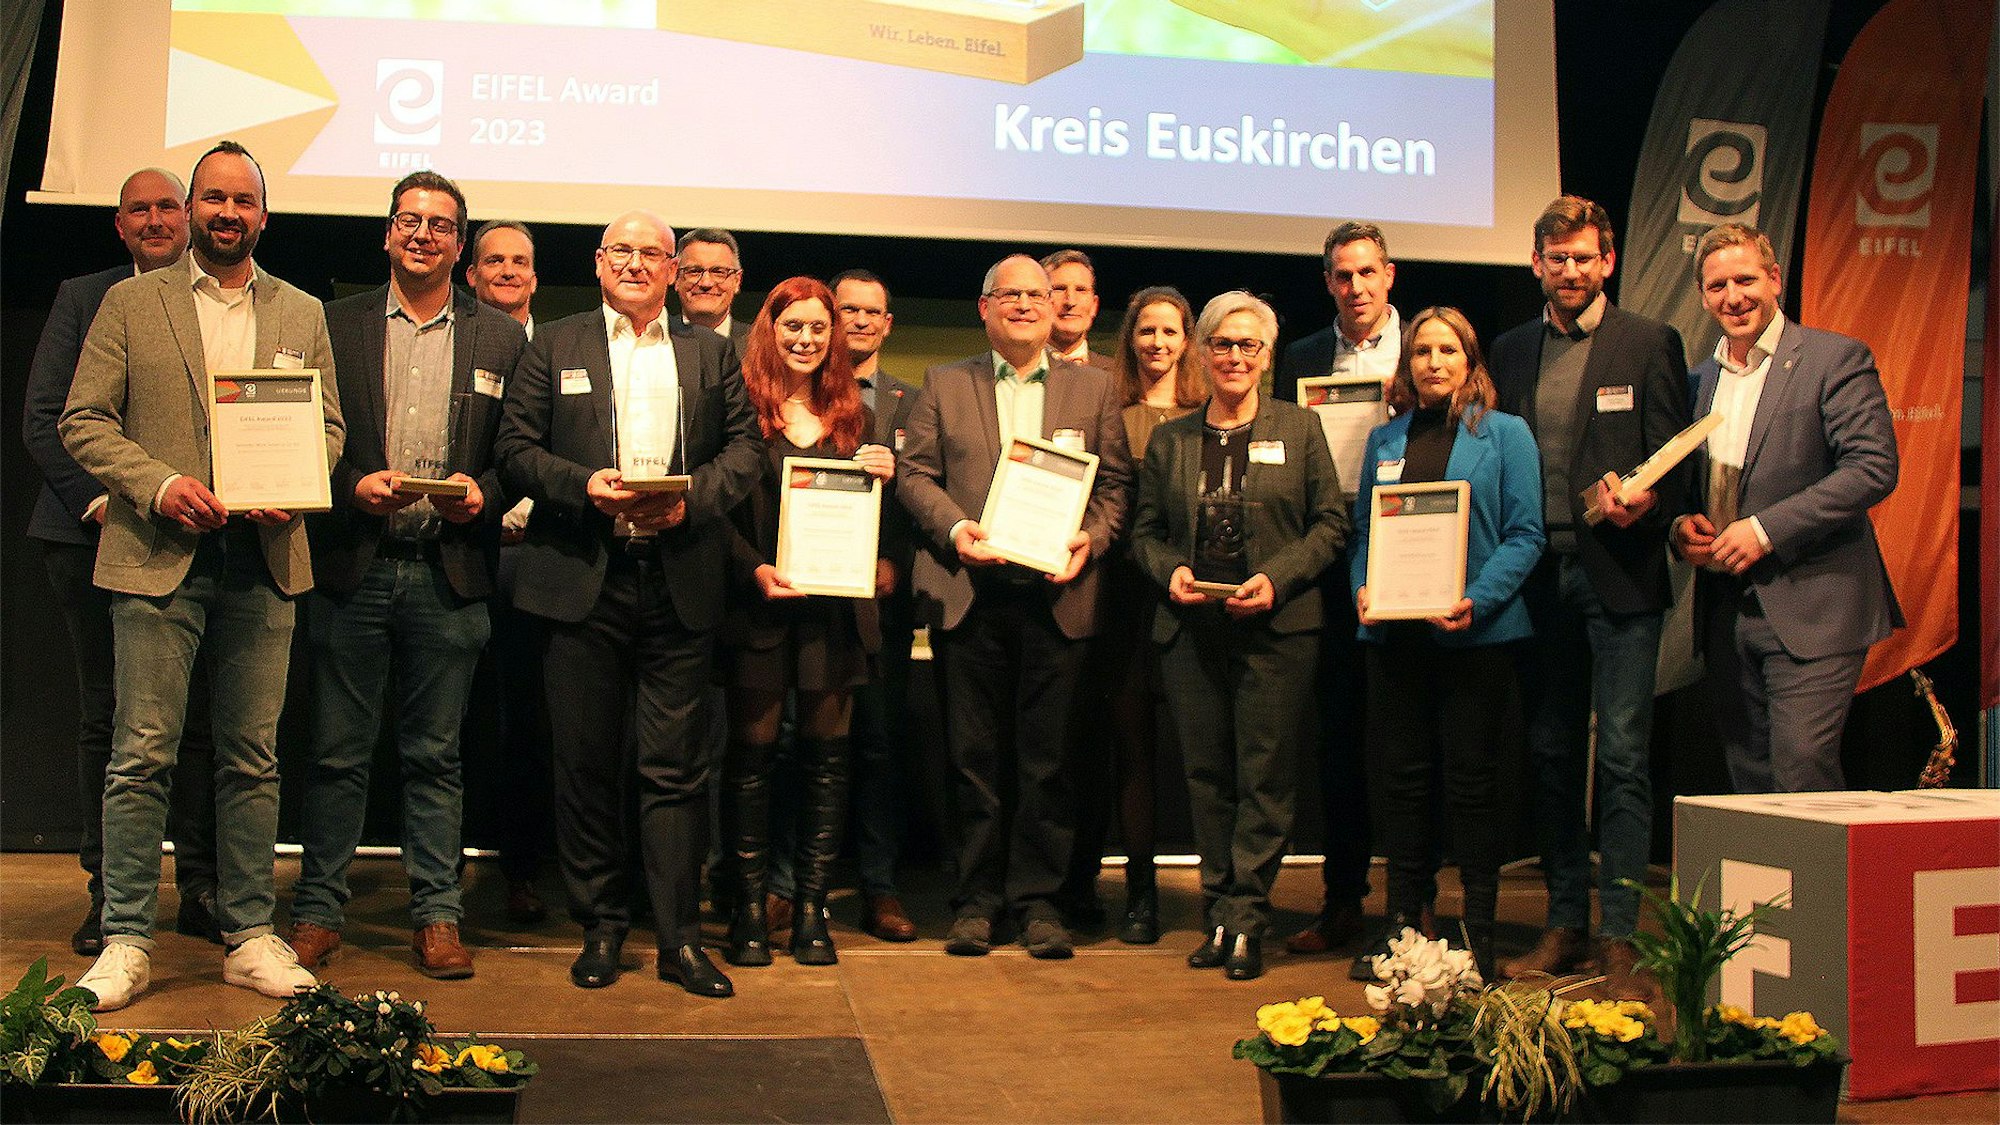 Mit Urkunden stehen die Gewinner des diesjährigen Eifel Awards auf der Bühne.